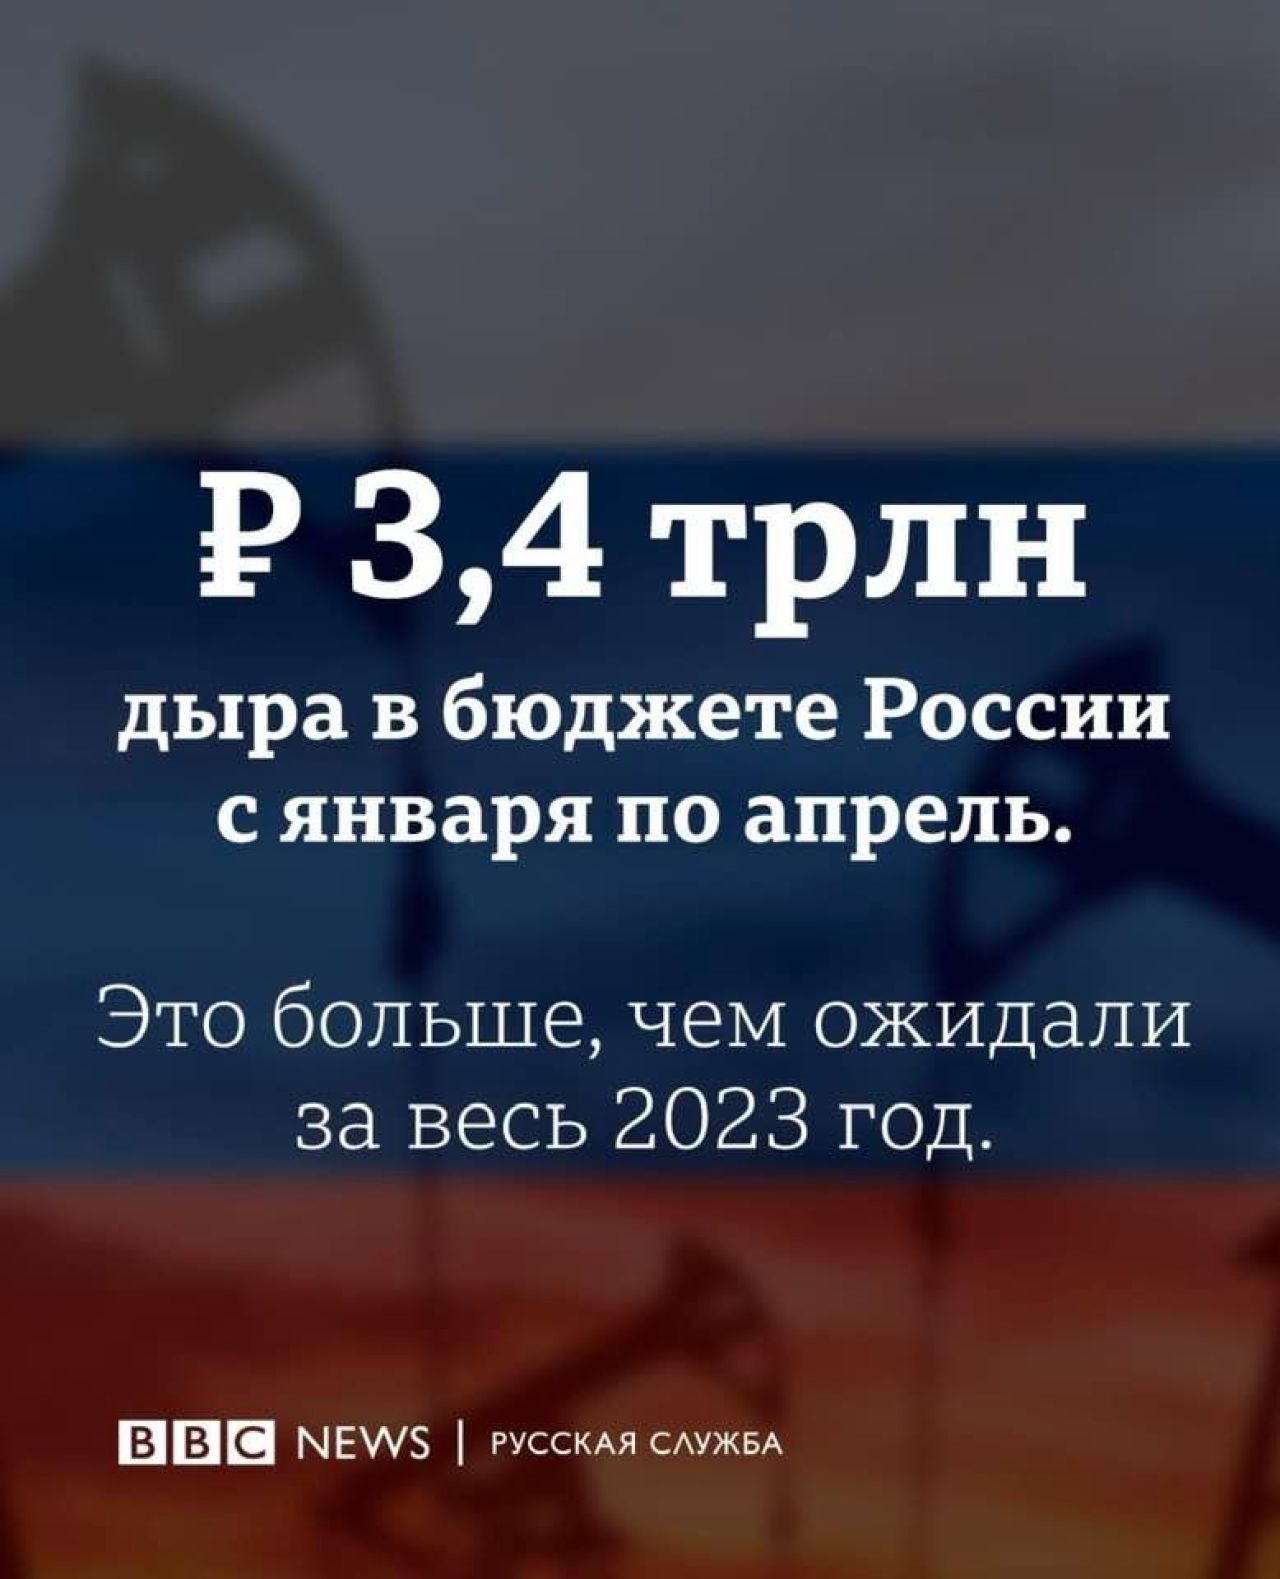 2023թ-ի հունվար-ապրիլ ամիսներին Ռուսաստանի պետբյուջեի դեֆիցիտը կազմել է 3.4 տրիլիոն ռուբլի